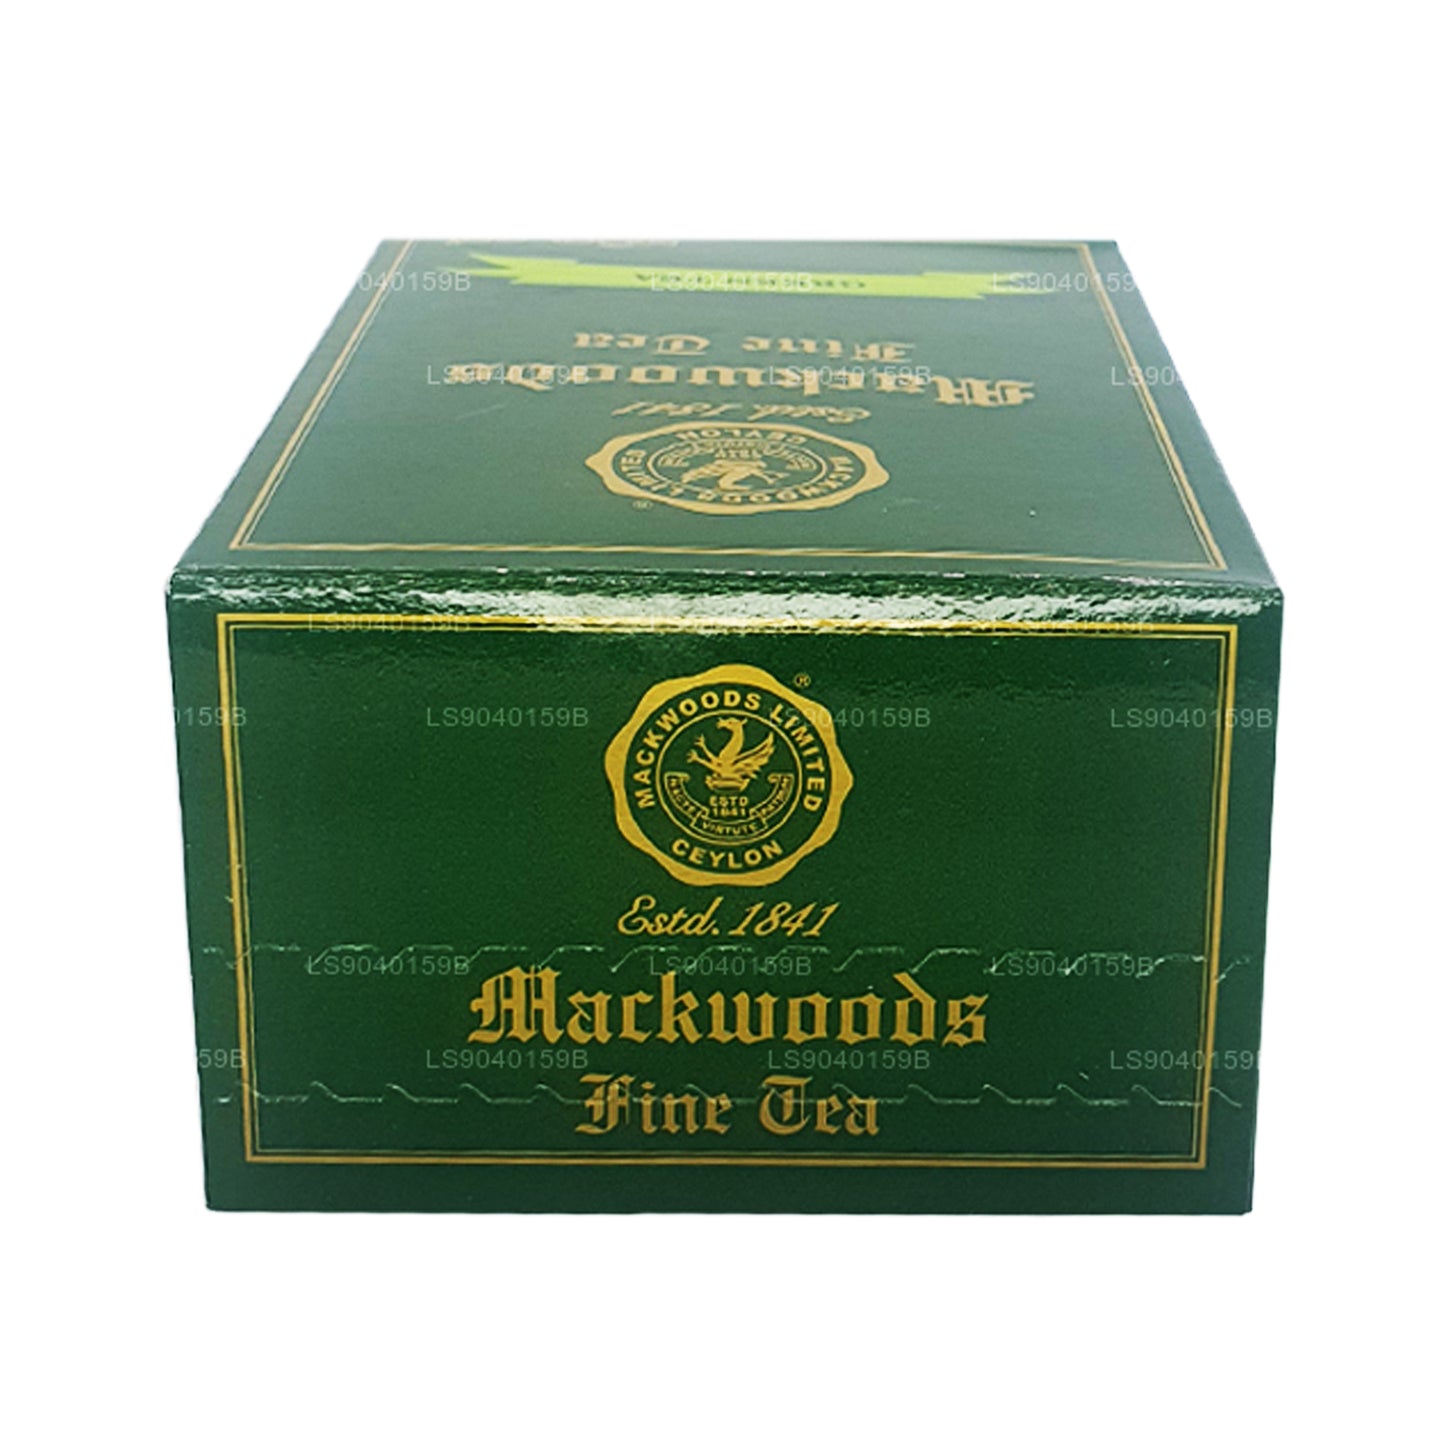 Mackwoods Loose Leaf Grøn Te (100 g)